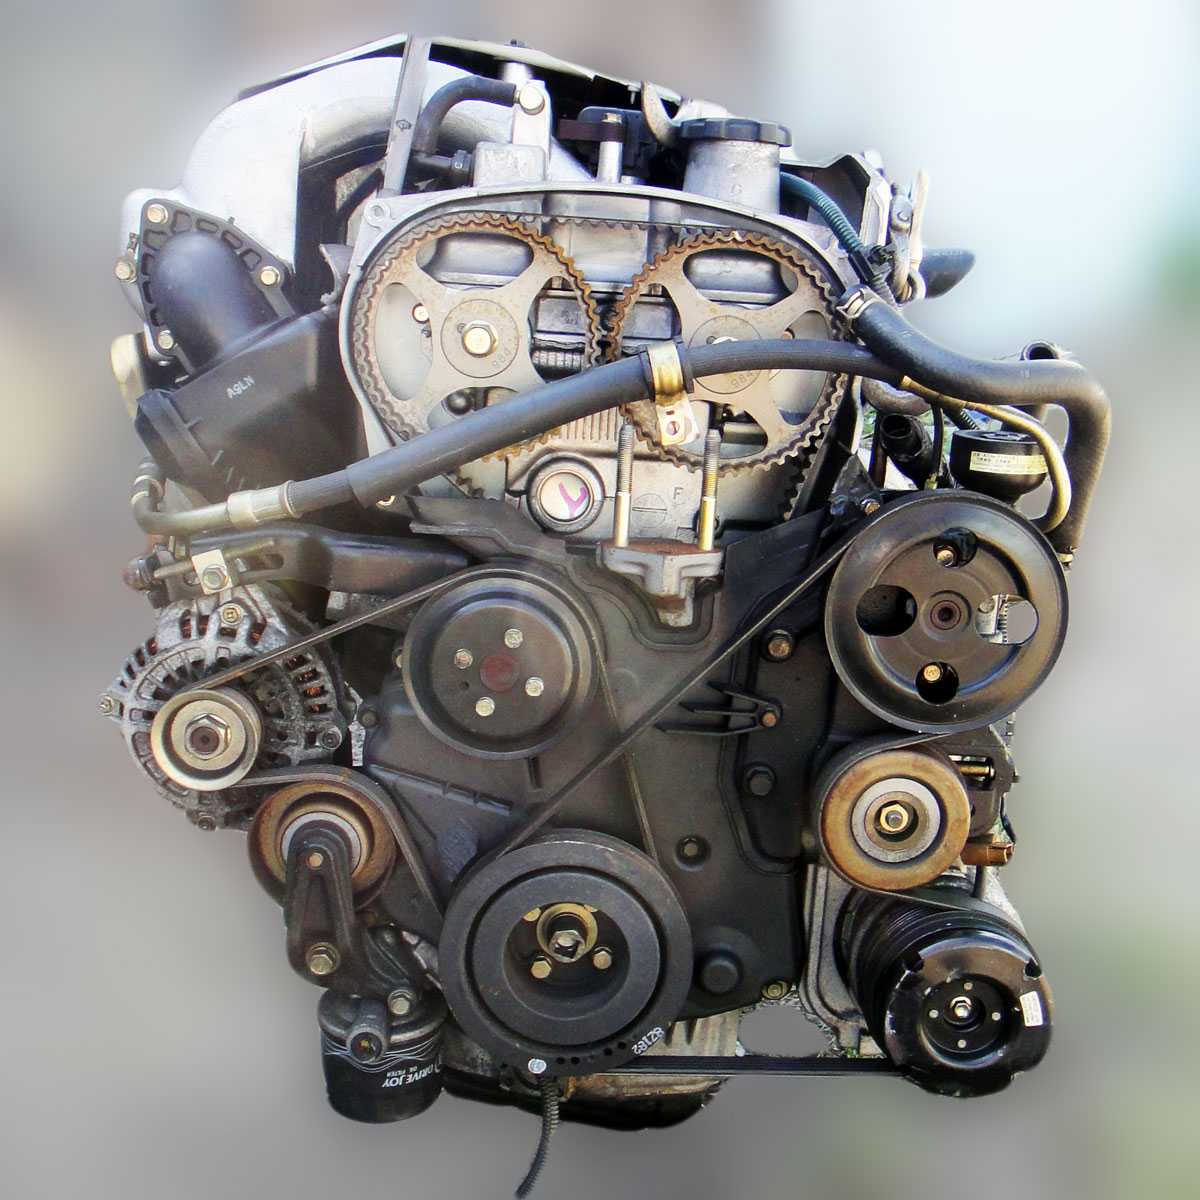 Двигатель 4g69 mitsubishi, byd, geely, great wall, hawtai, технические характеристики, какое масло лить, ремонт двигателя 4g69, доработки и тюнинг, схема устройства, рекомендации по обслуживанию